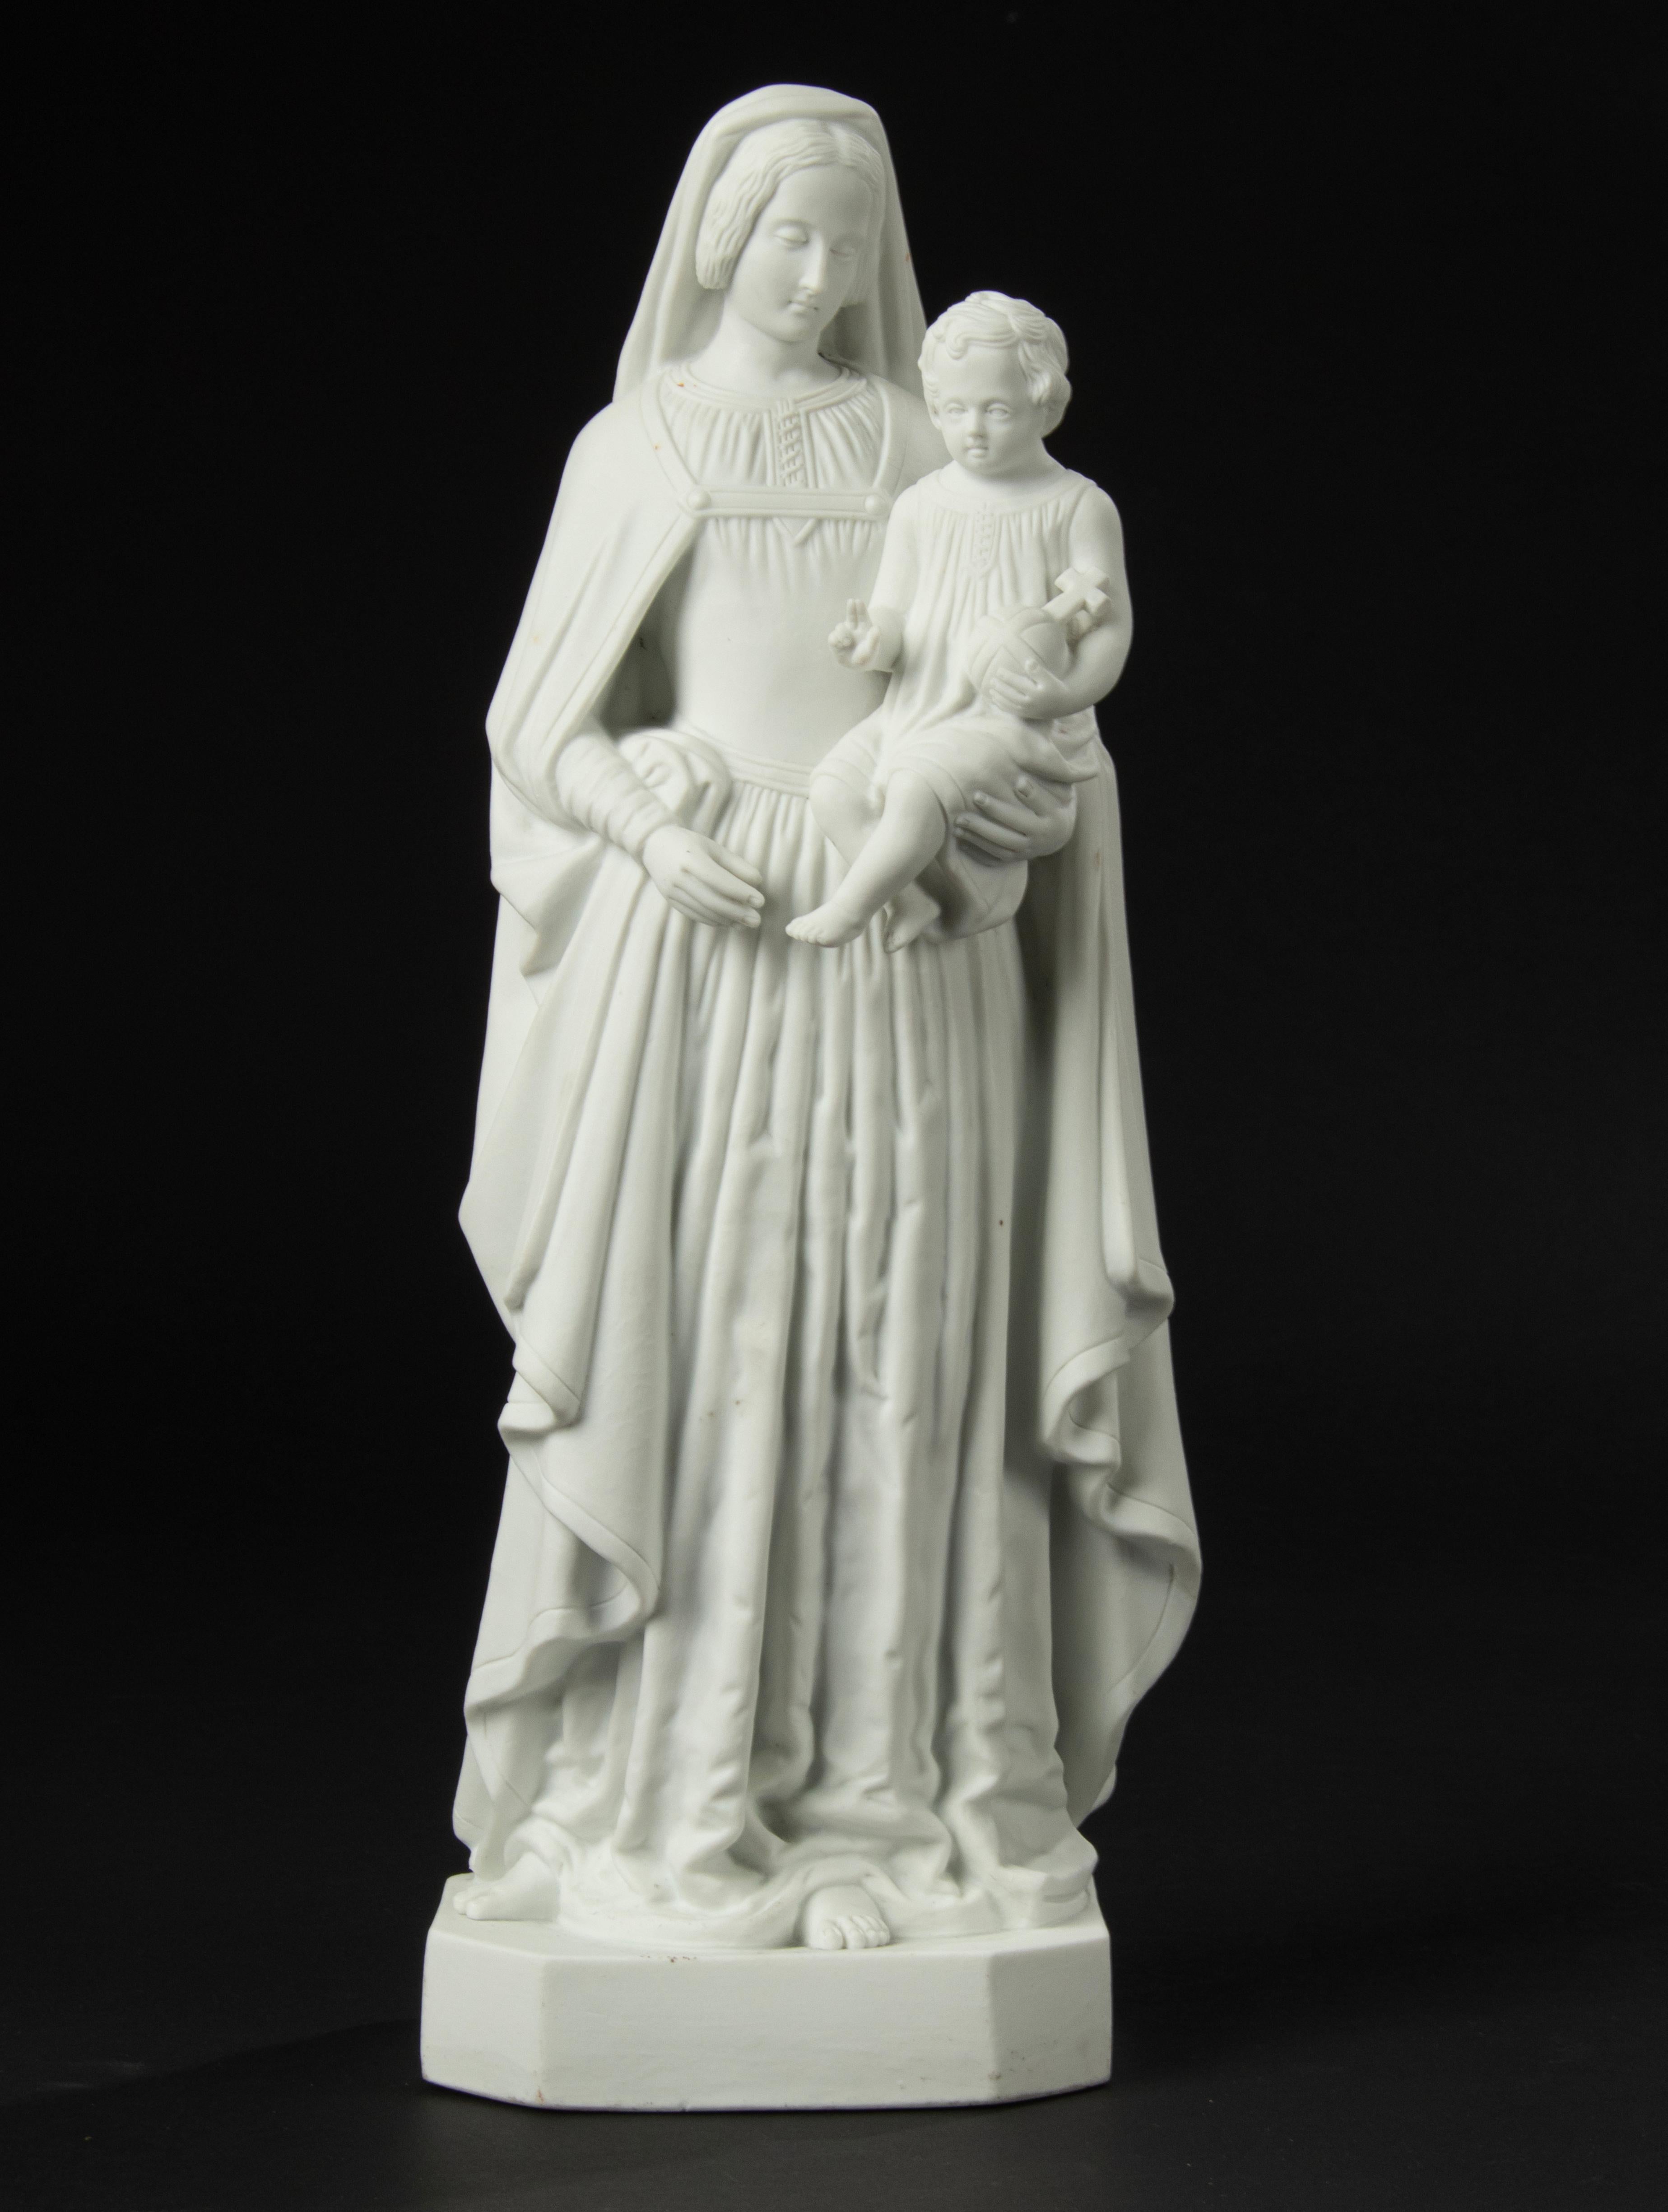 Preciosa escultura de porcelana bizcochada, que representa a María con el niño Jesús en el brazo.
La escultura está marcada en la parte inferior, pero la señal no es clara. Fabricante desconocido.
La estatua está en muy buen estado. Envío gratuito.